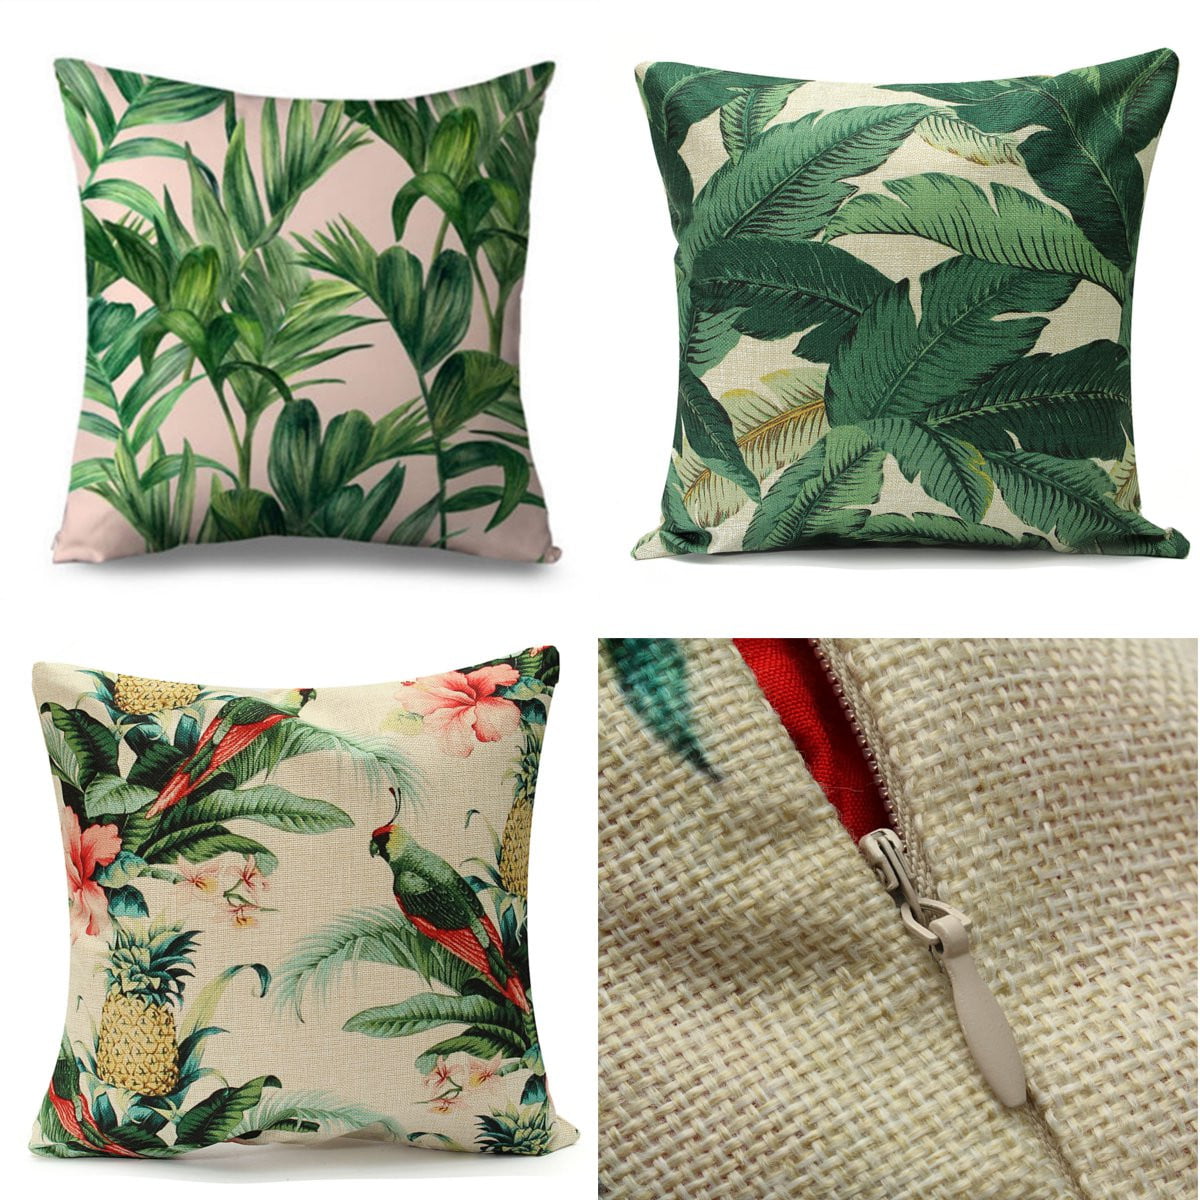 18" Tropical Green Leaves Sofa Cushion Cover Throw Pillow Case Home Garden Decor 